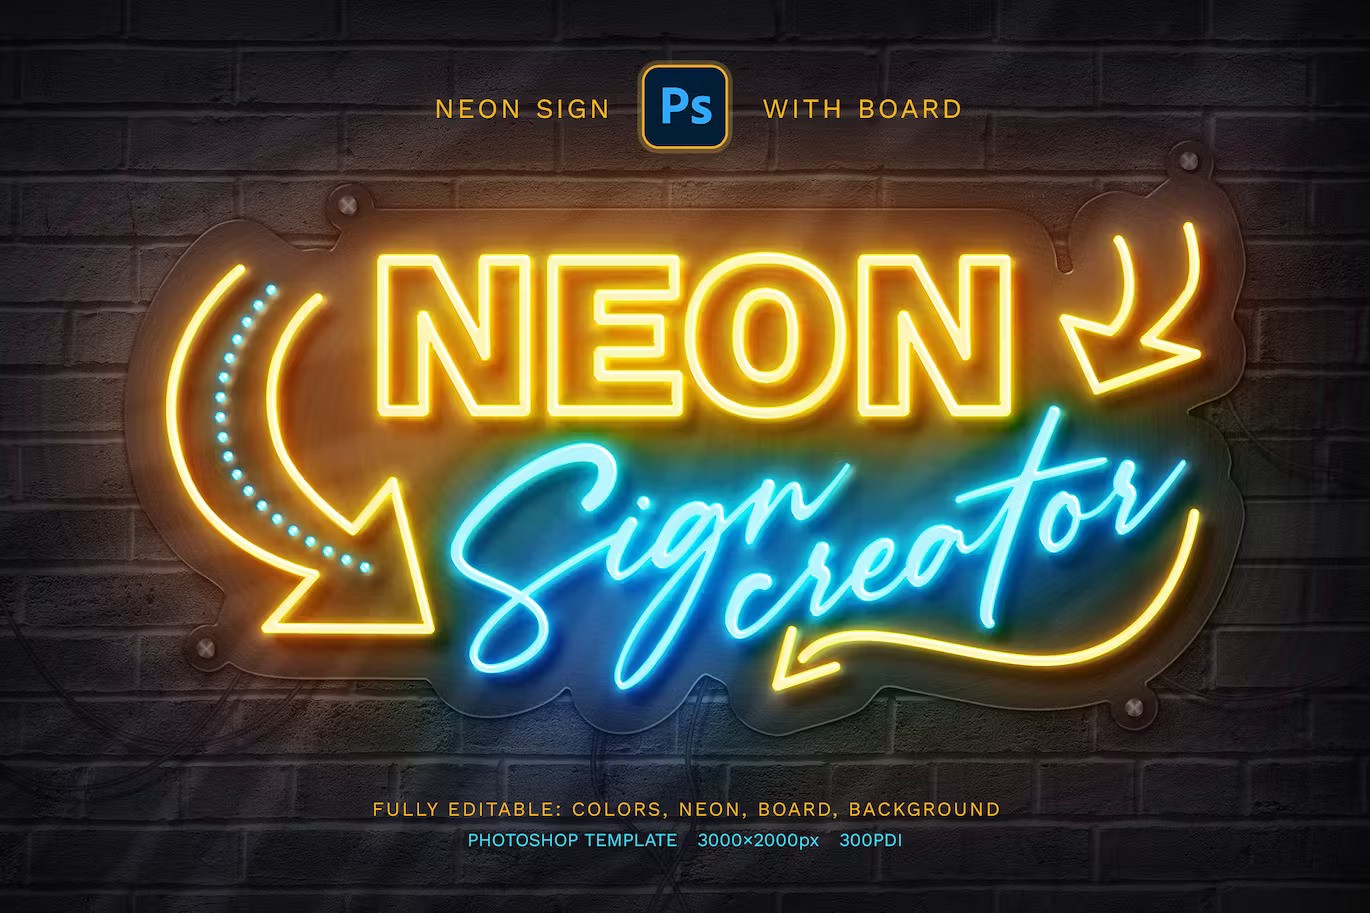 霓虹灯牌样机模版 Neon Sign Board